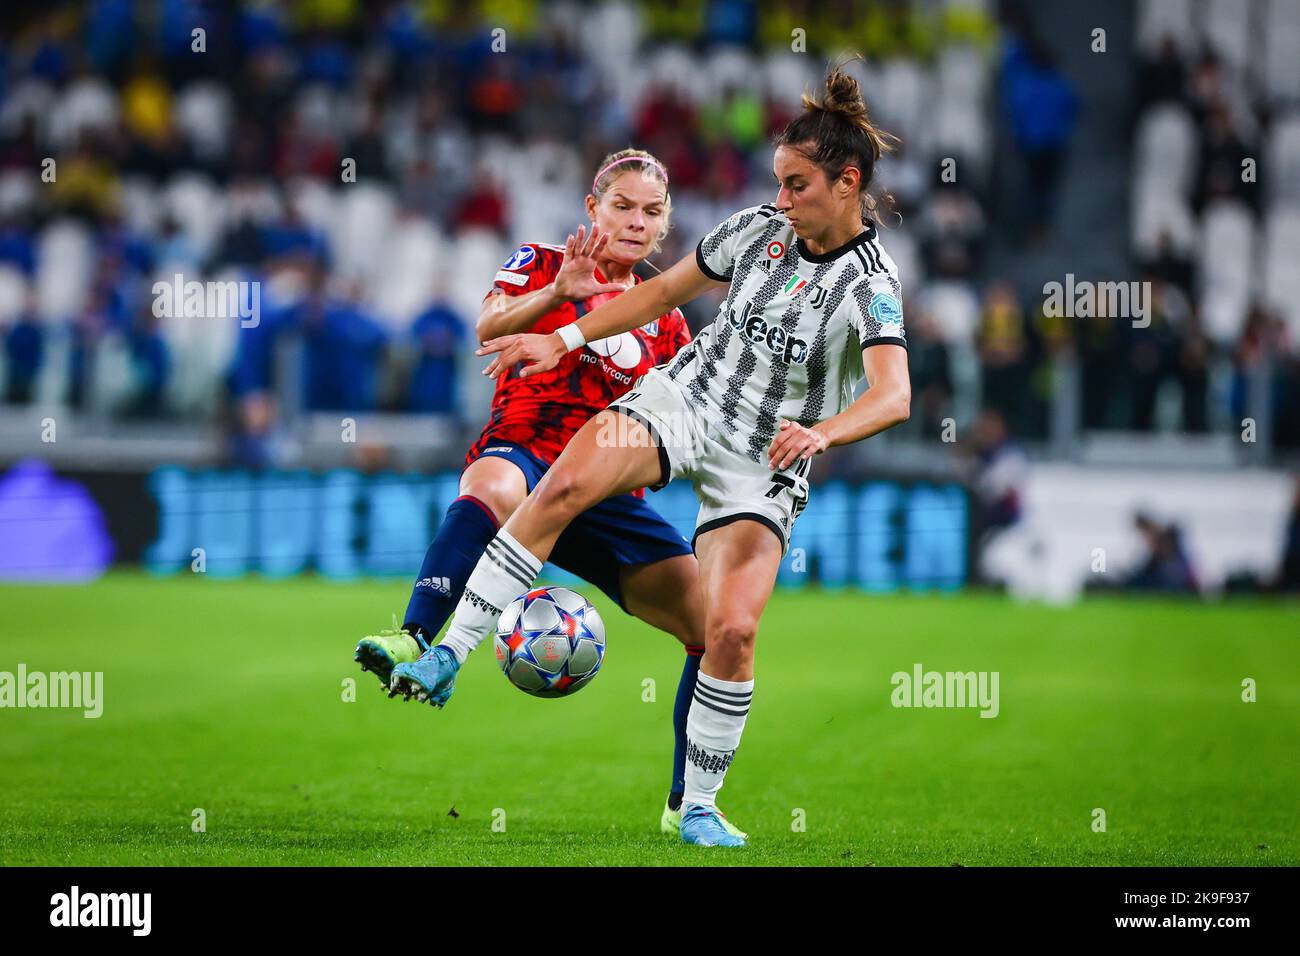 Calcio femminile, il Lugano è da Champions League: ancora due luinesi tra i  protagonisti